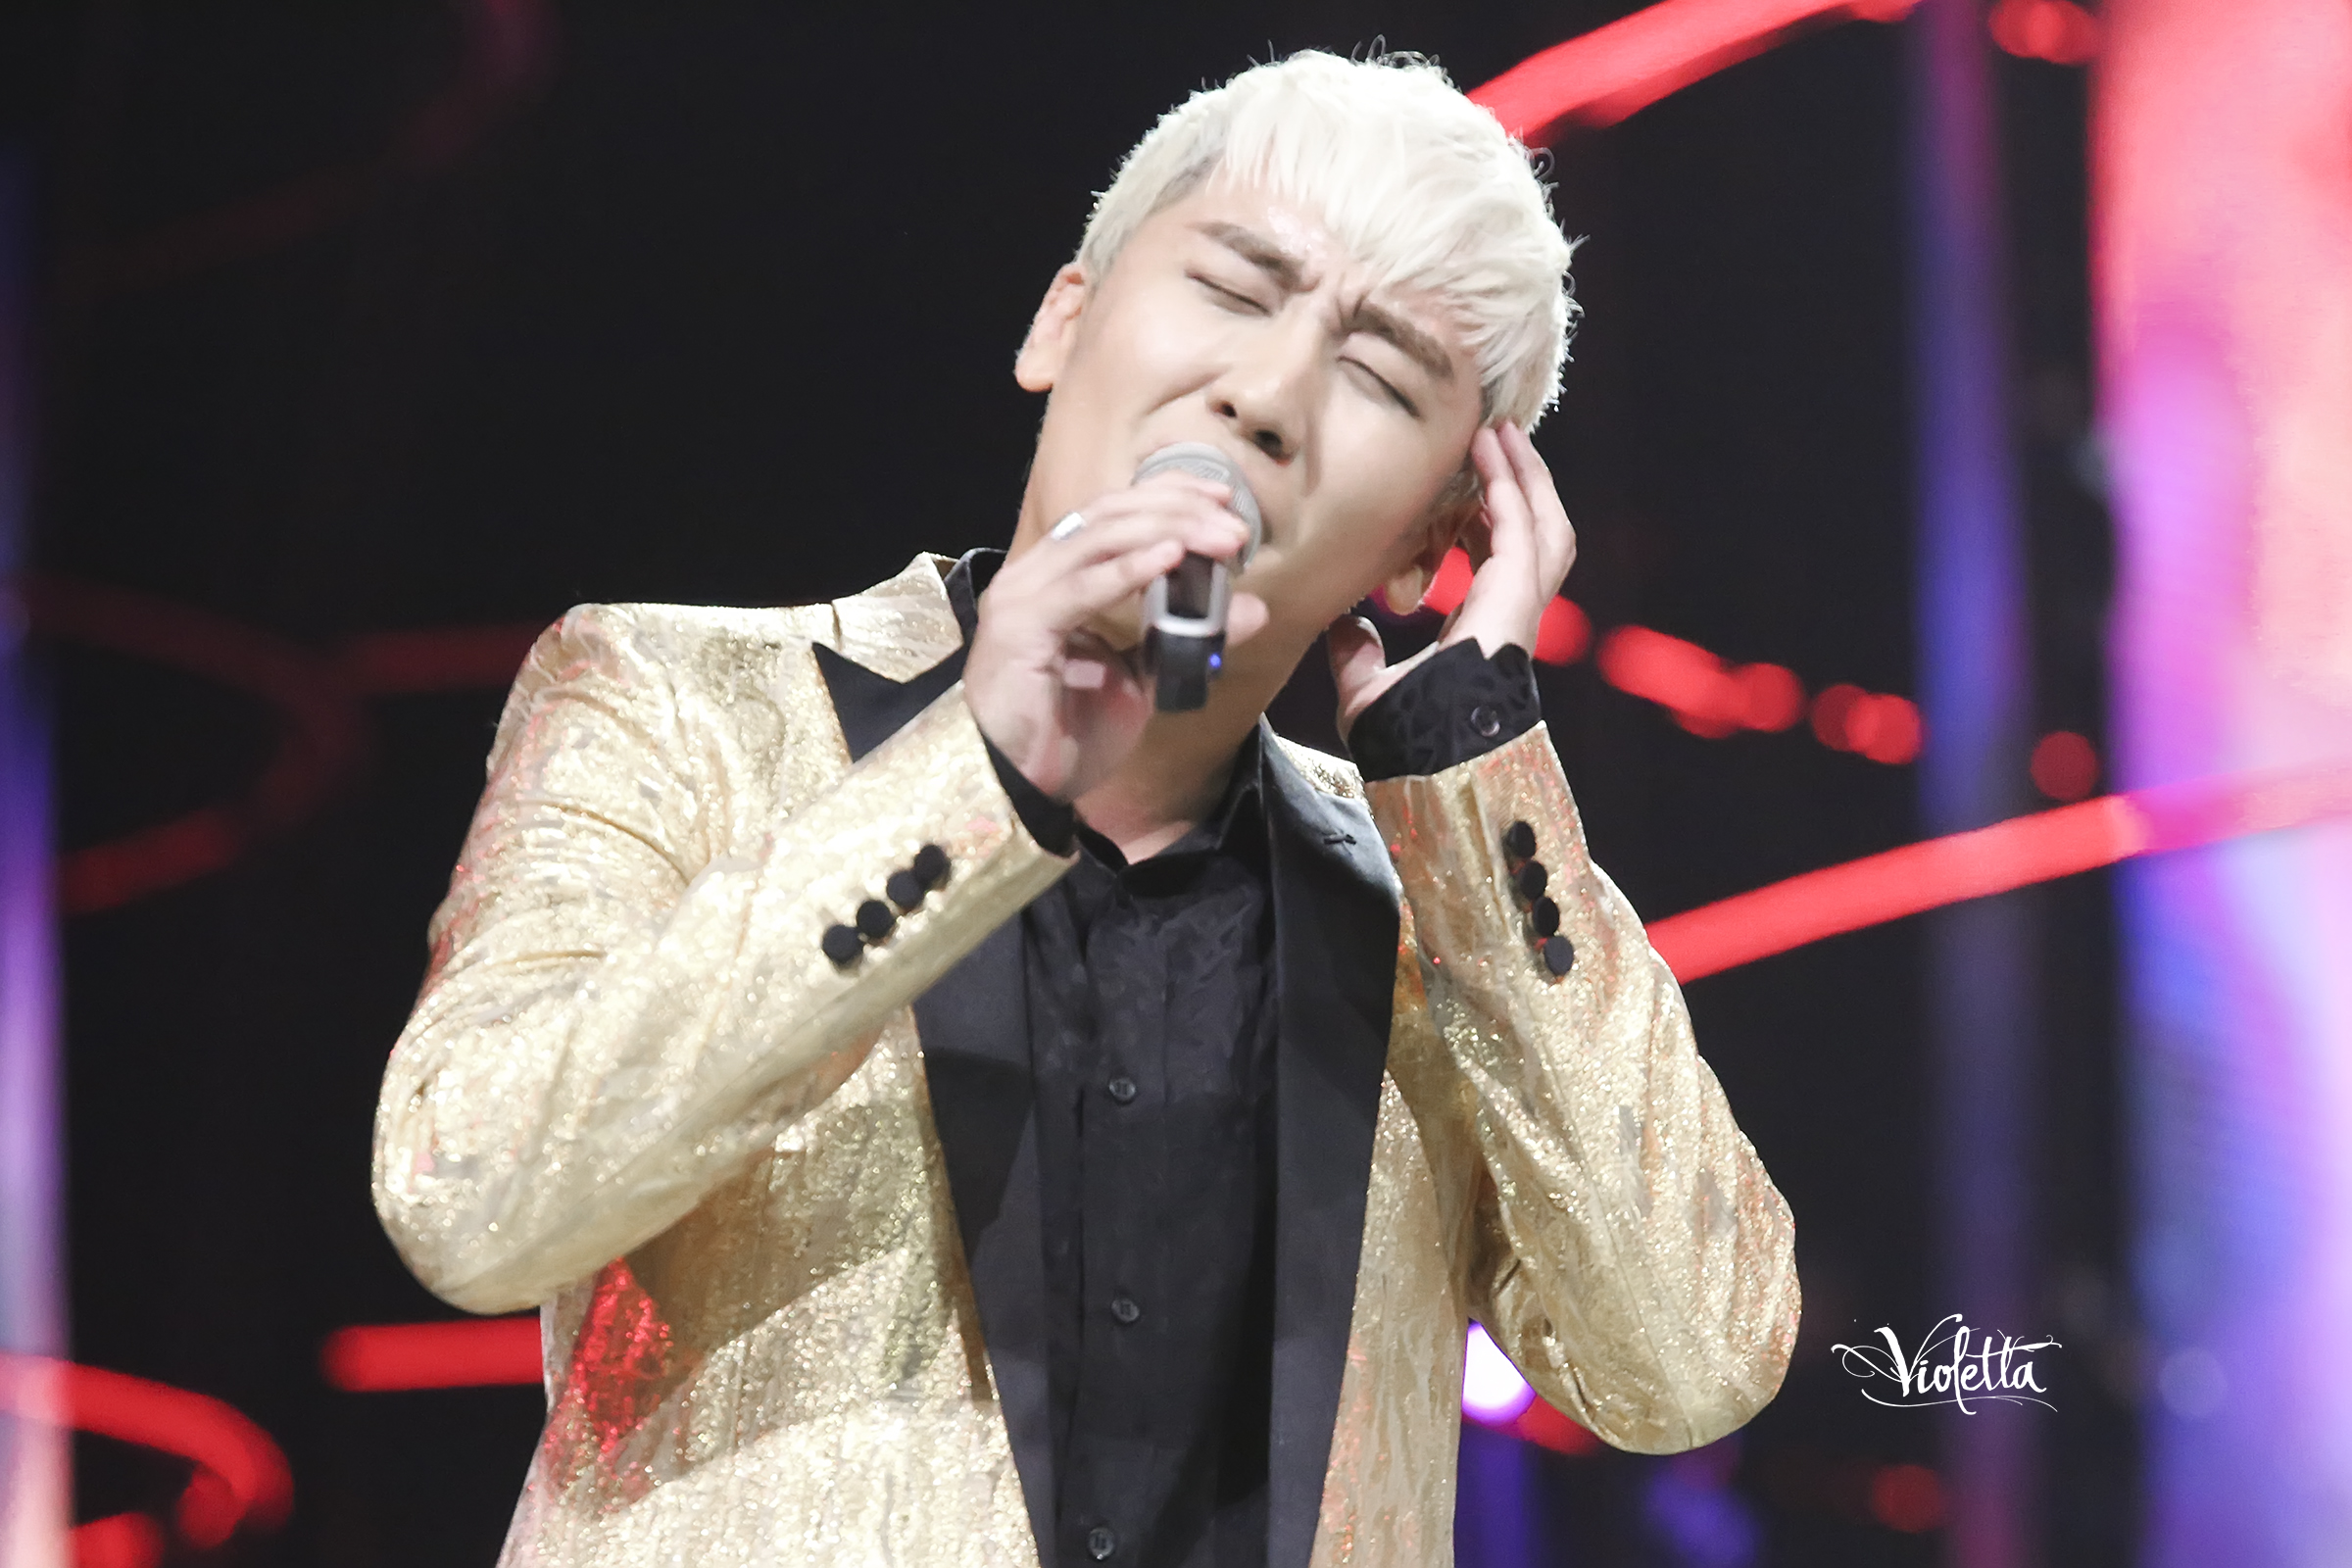 BIGBANG VIPevent Beijing 2016-01-01 By BIGBANG Hunan TV 2015-12-31 By Violetta_1212 (22)